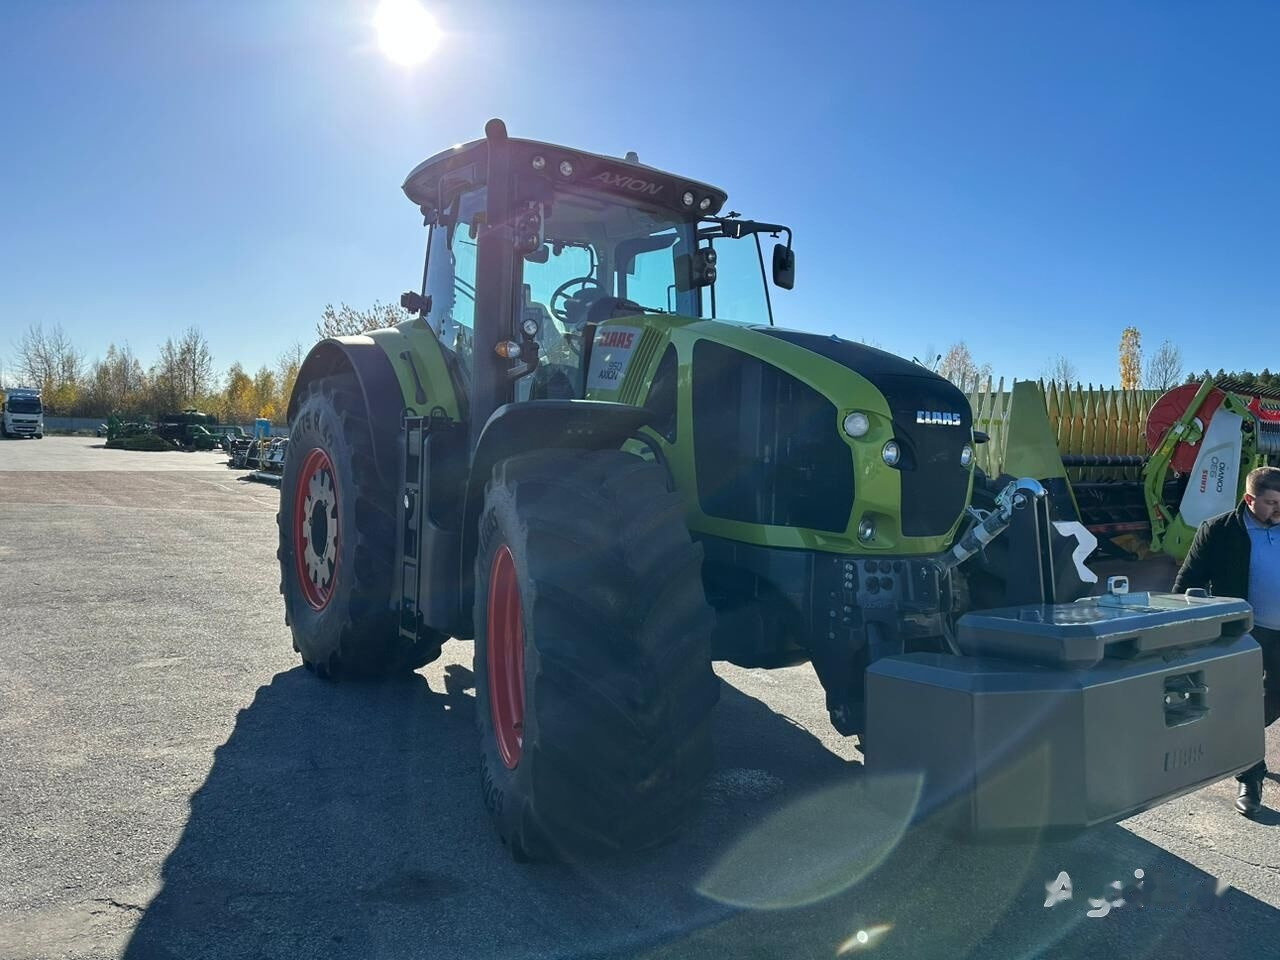 Farm tractor Claas 950 Axion